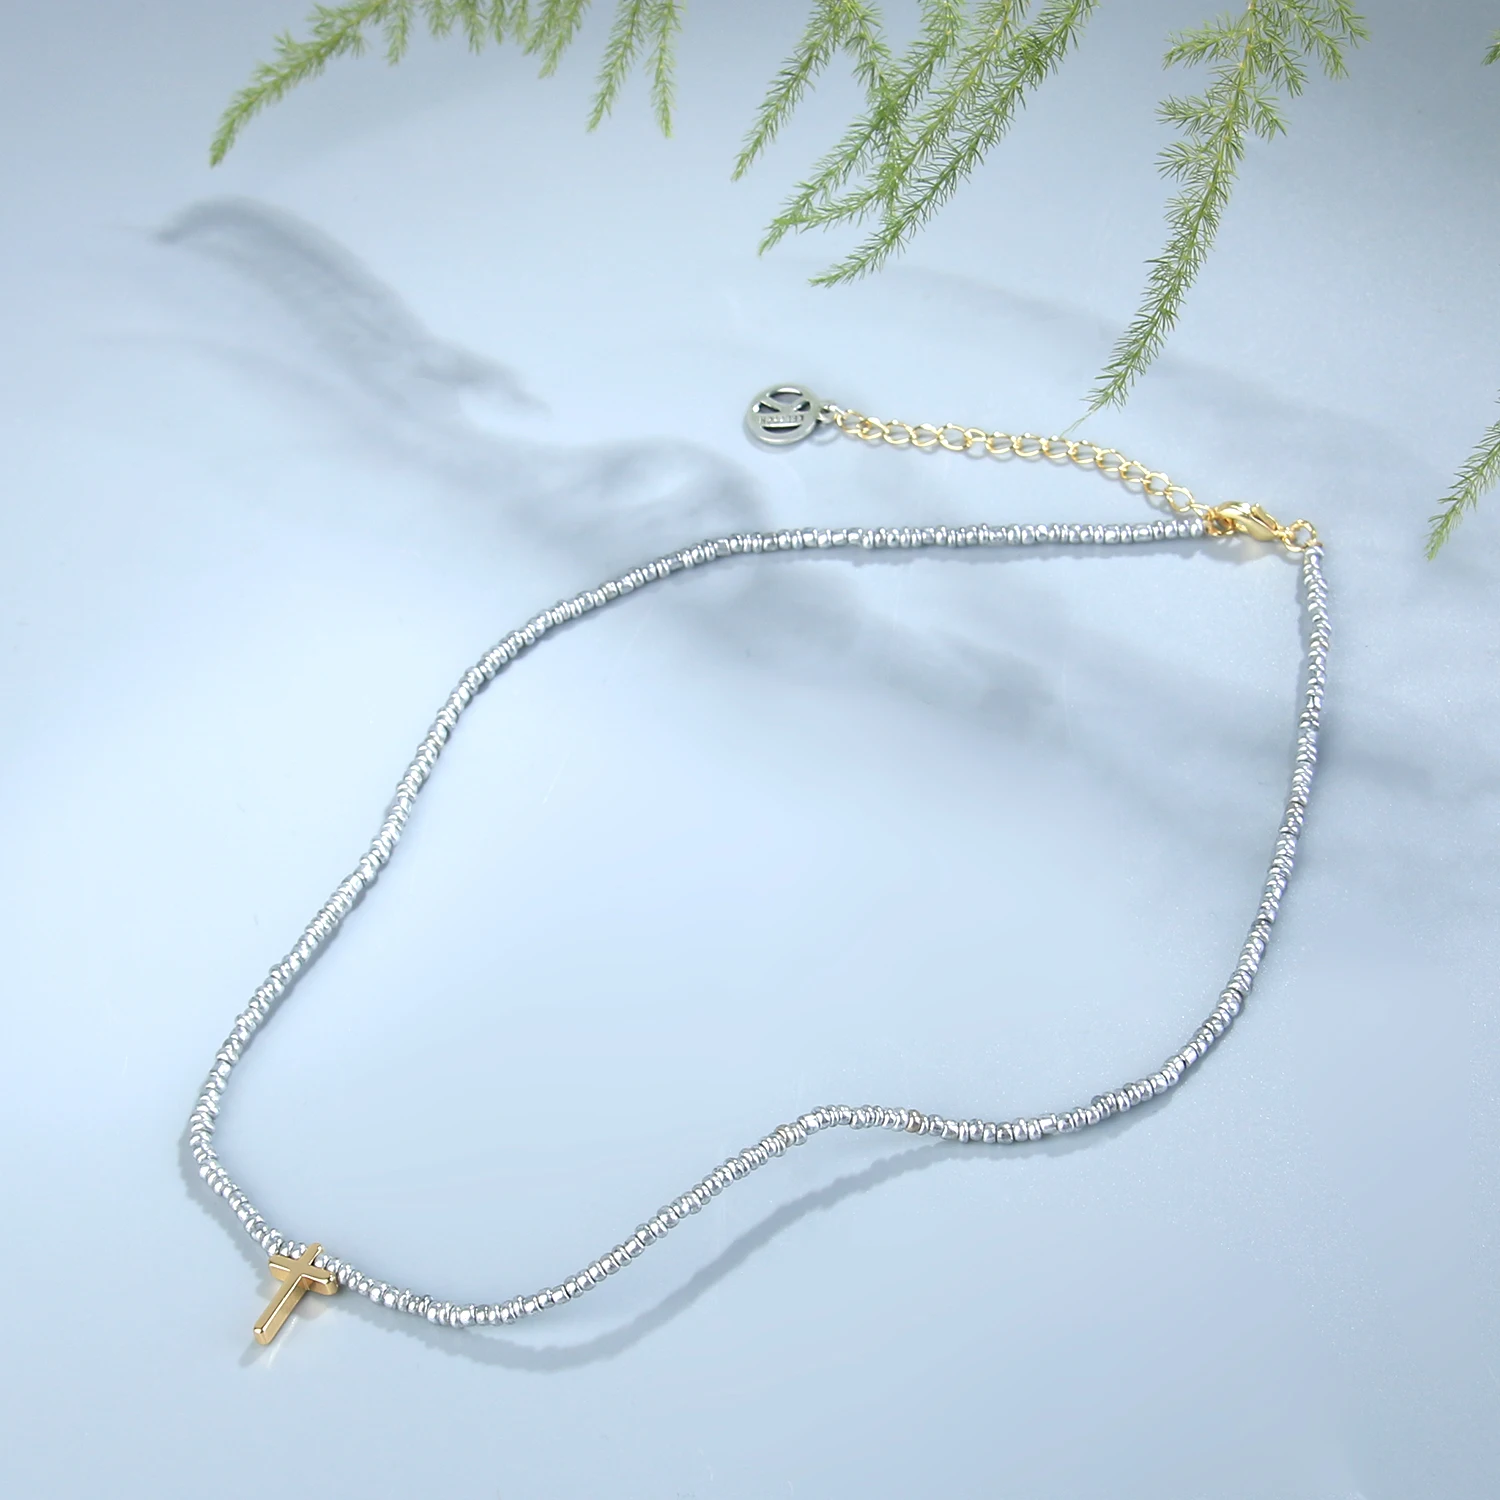 KELITCH Mujeres Miyuki Cruz Colgante de Collares de Perlas de Cristal Collar de la Amistad de la Joyería Gargantillas hechas a Mano Joyería al por mayor - 4